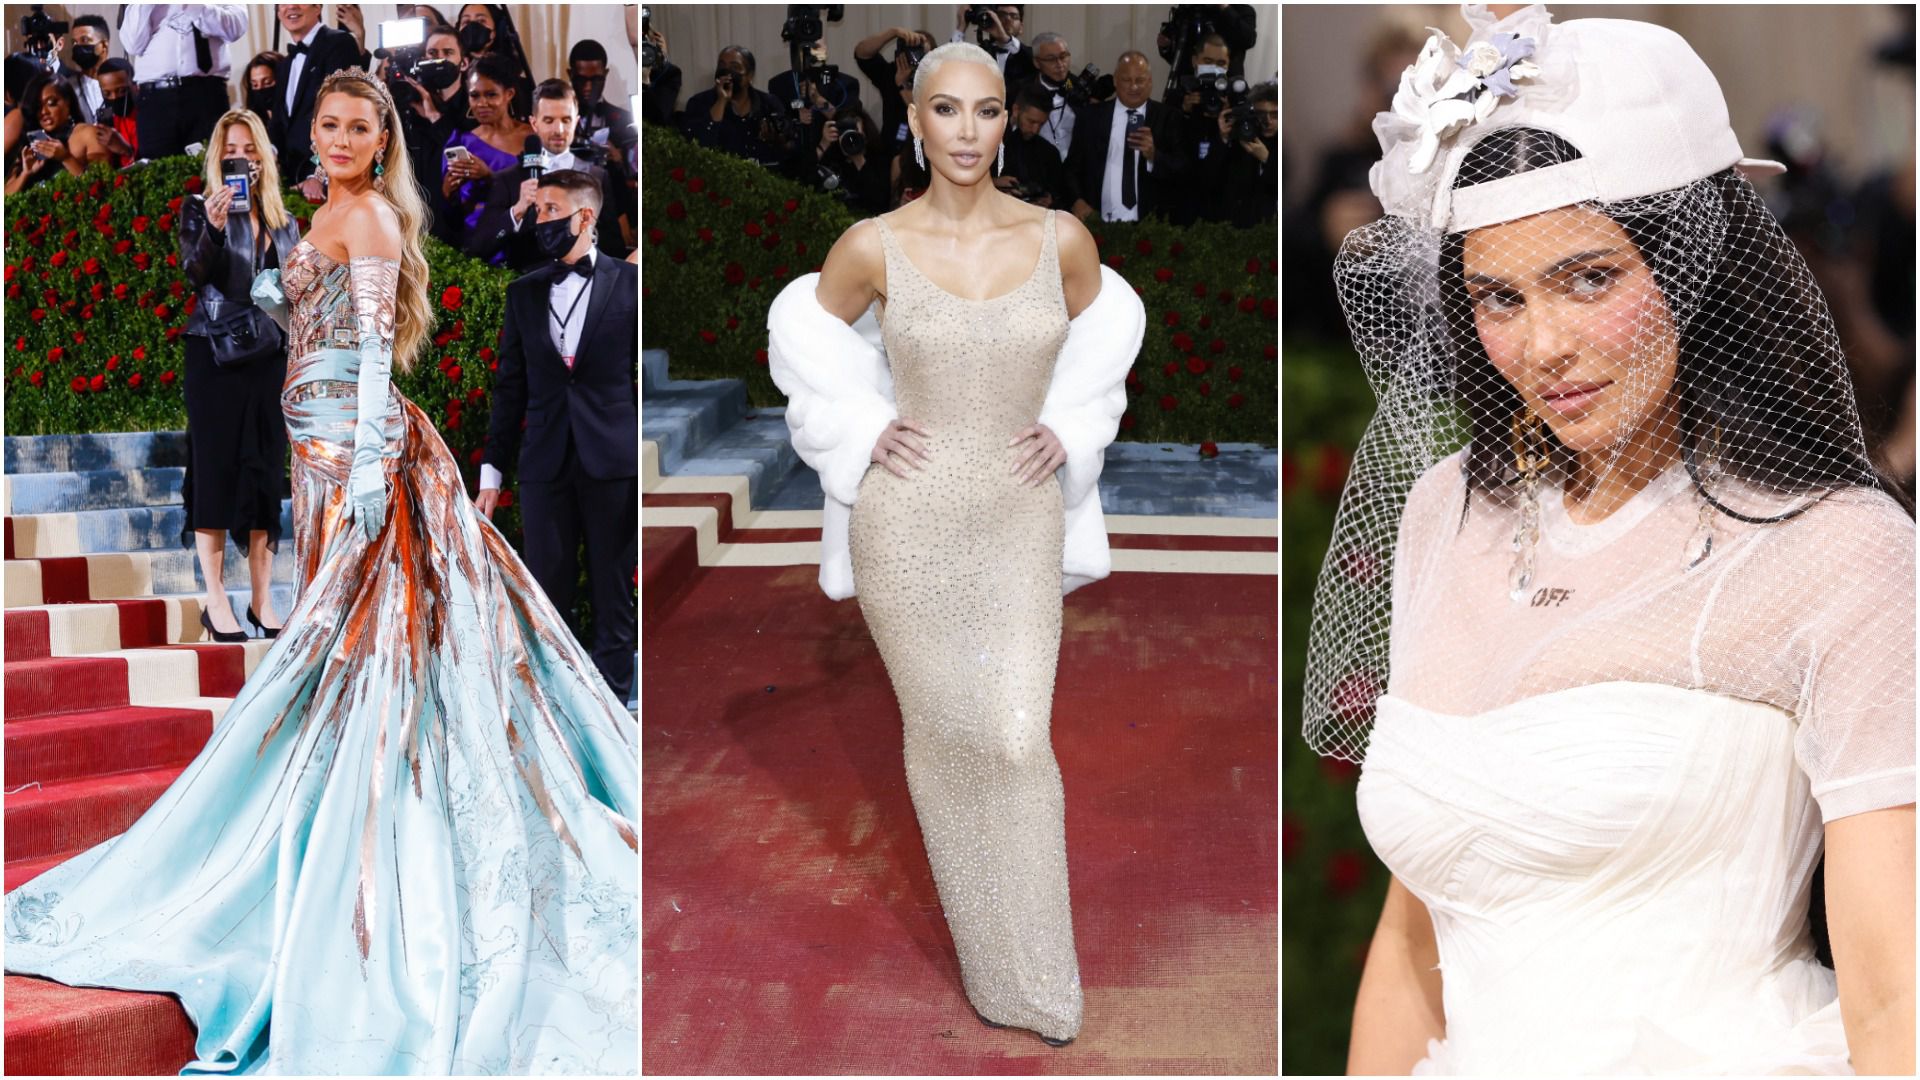 Svi pričaju o "transformaciji" kreacije Blake Lively, kao i o Kim Kardashian u kultnoj haljini Marilyn Monroe